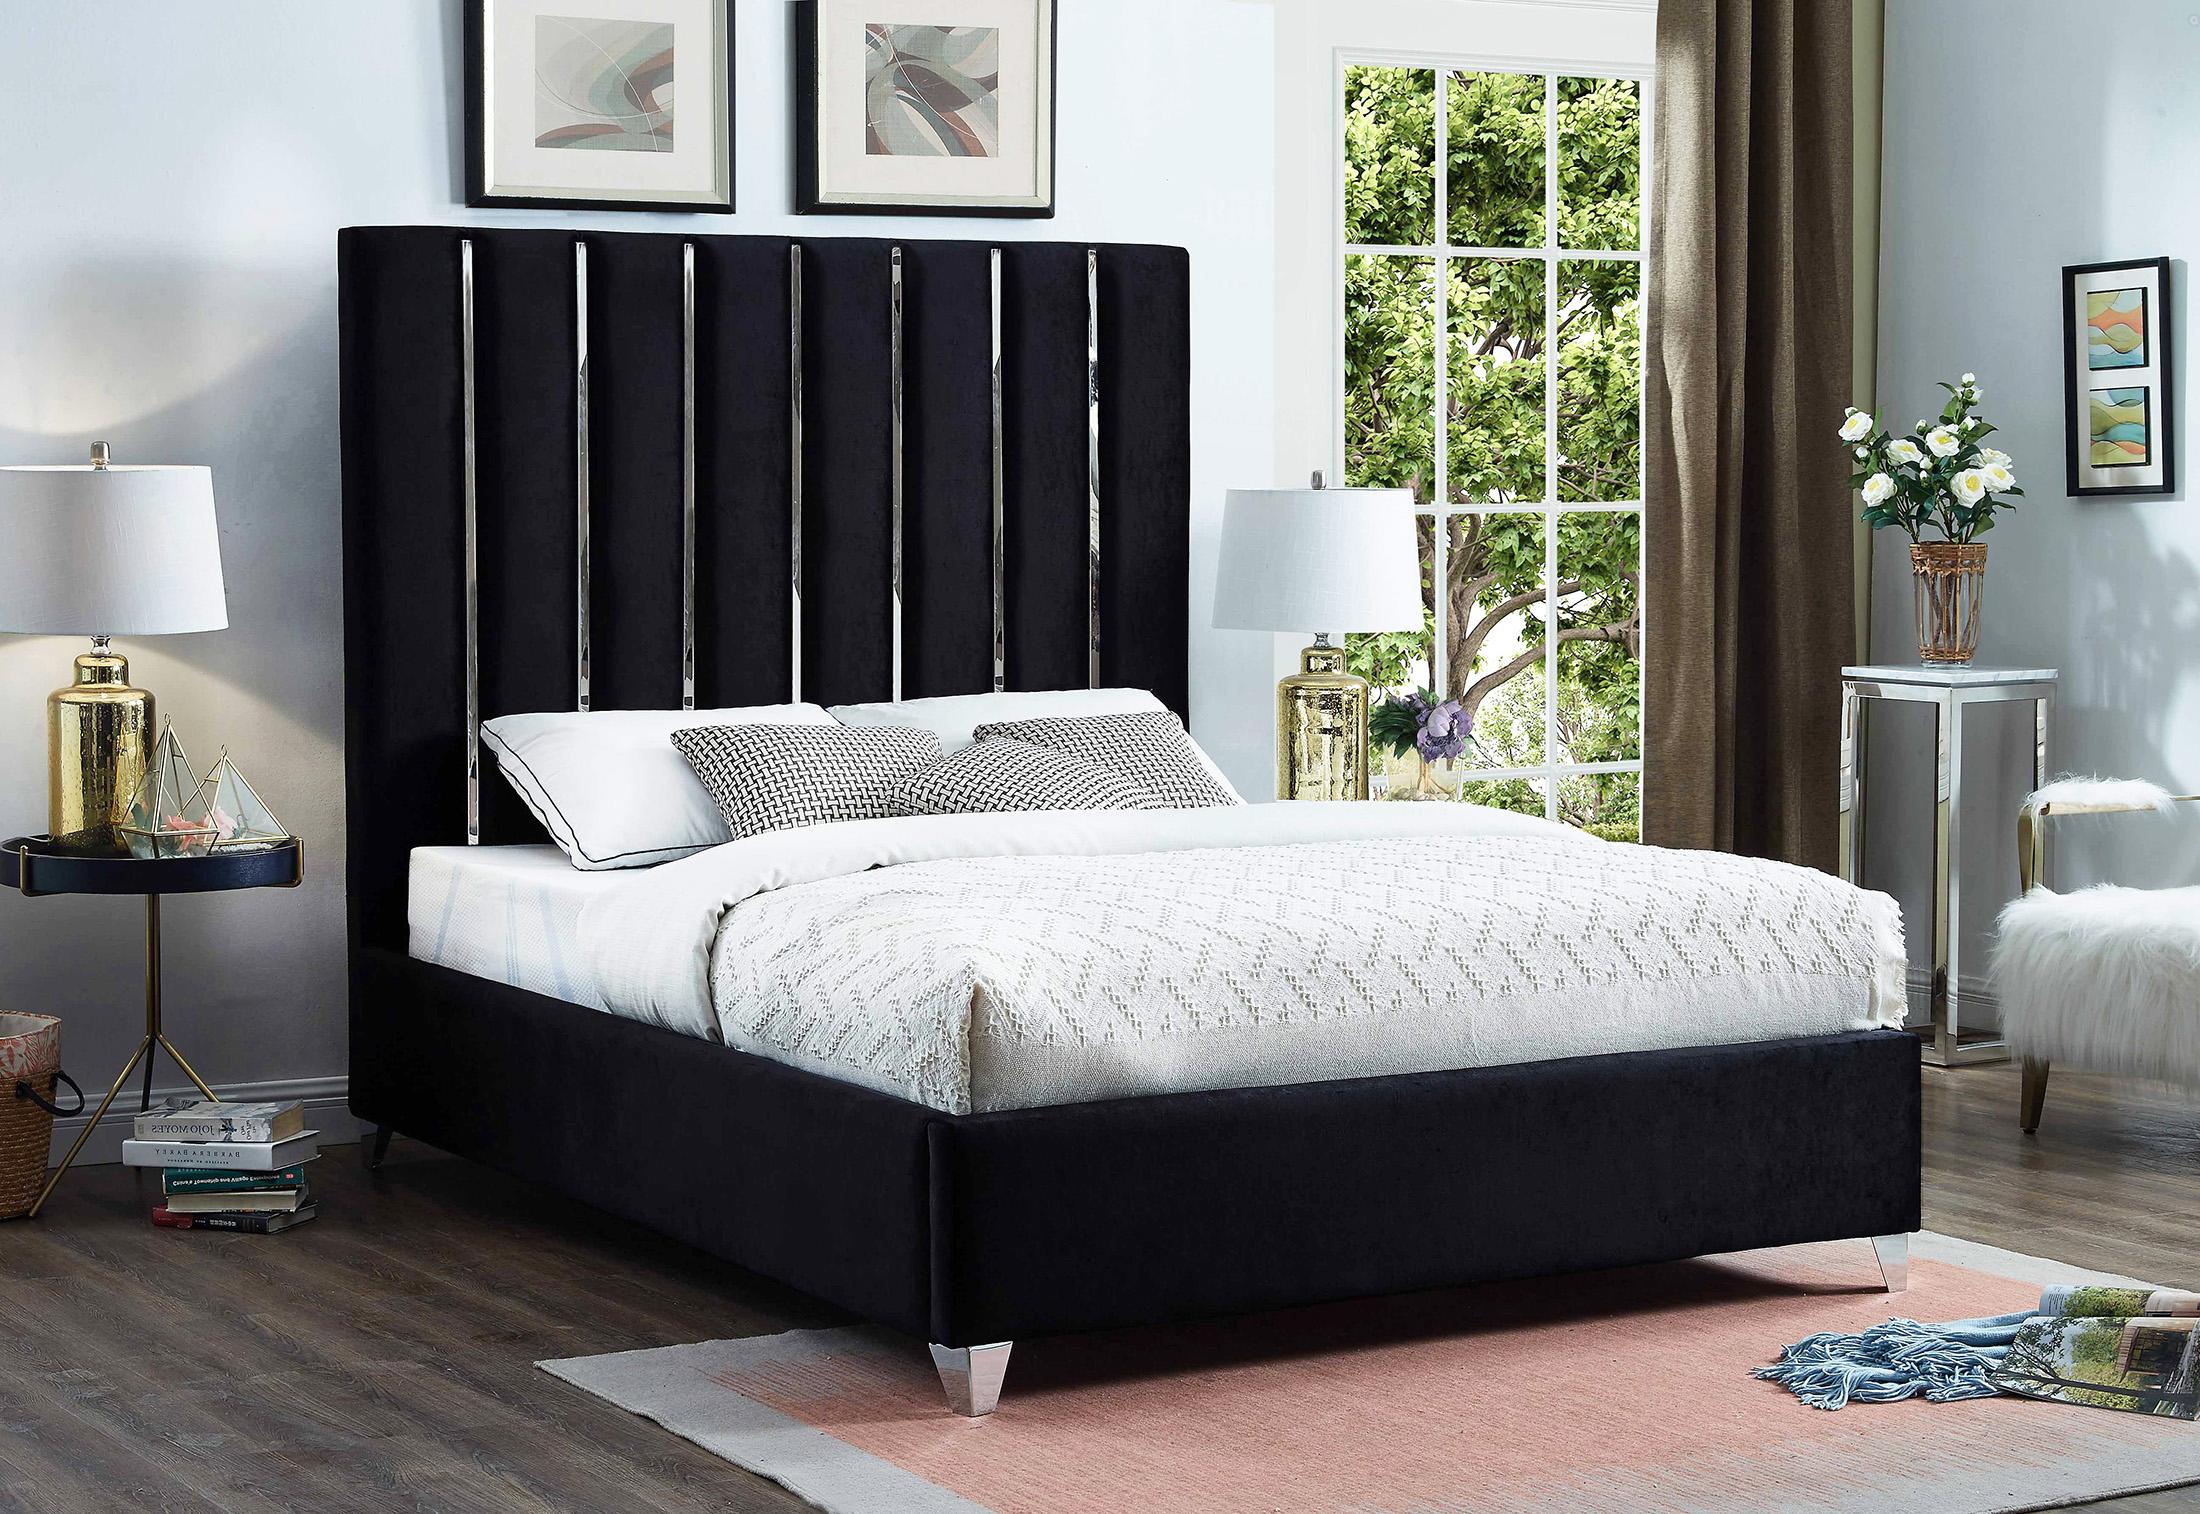 

    
Meridian Furniture ENZO EnzoBlack-Q Platform Bed Black EnzoBlack-Q
